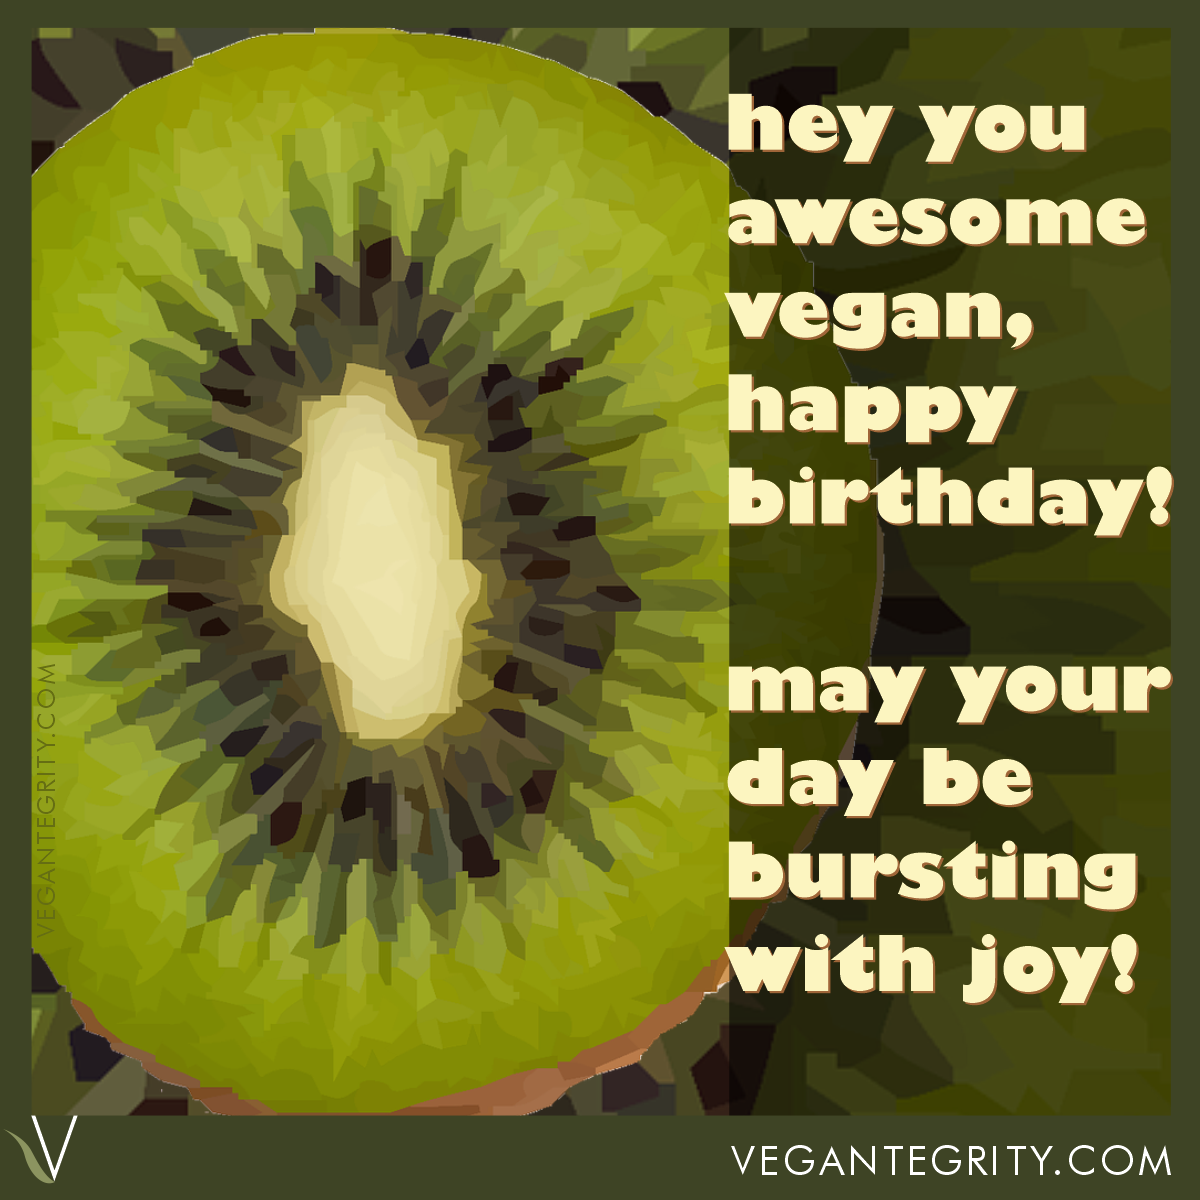 Sliced kiwi fruit illustration - Hey you awesome vegan, happy birthday. May your day be bursting with joy.